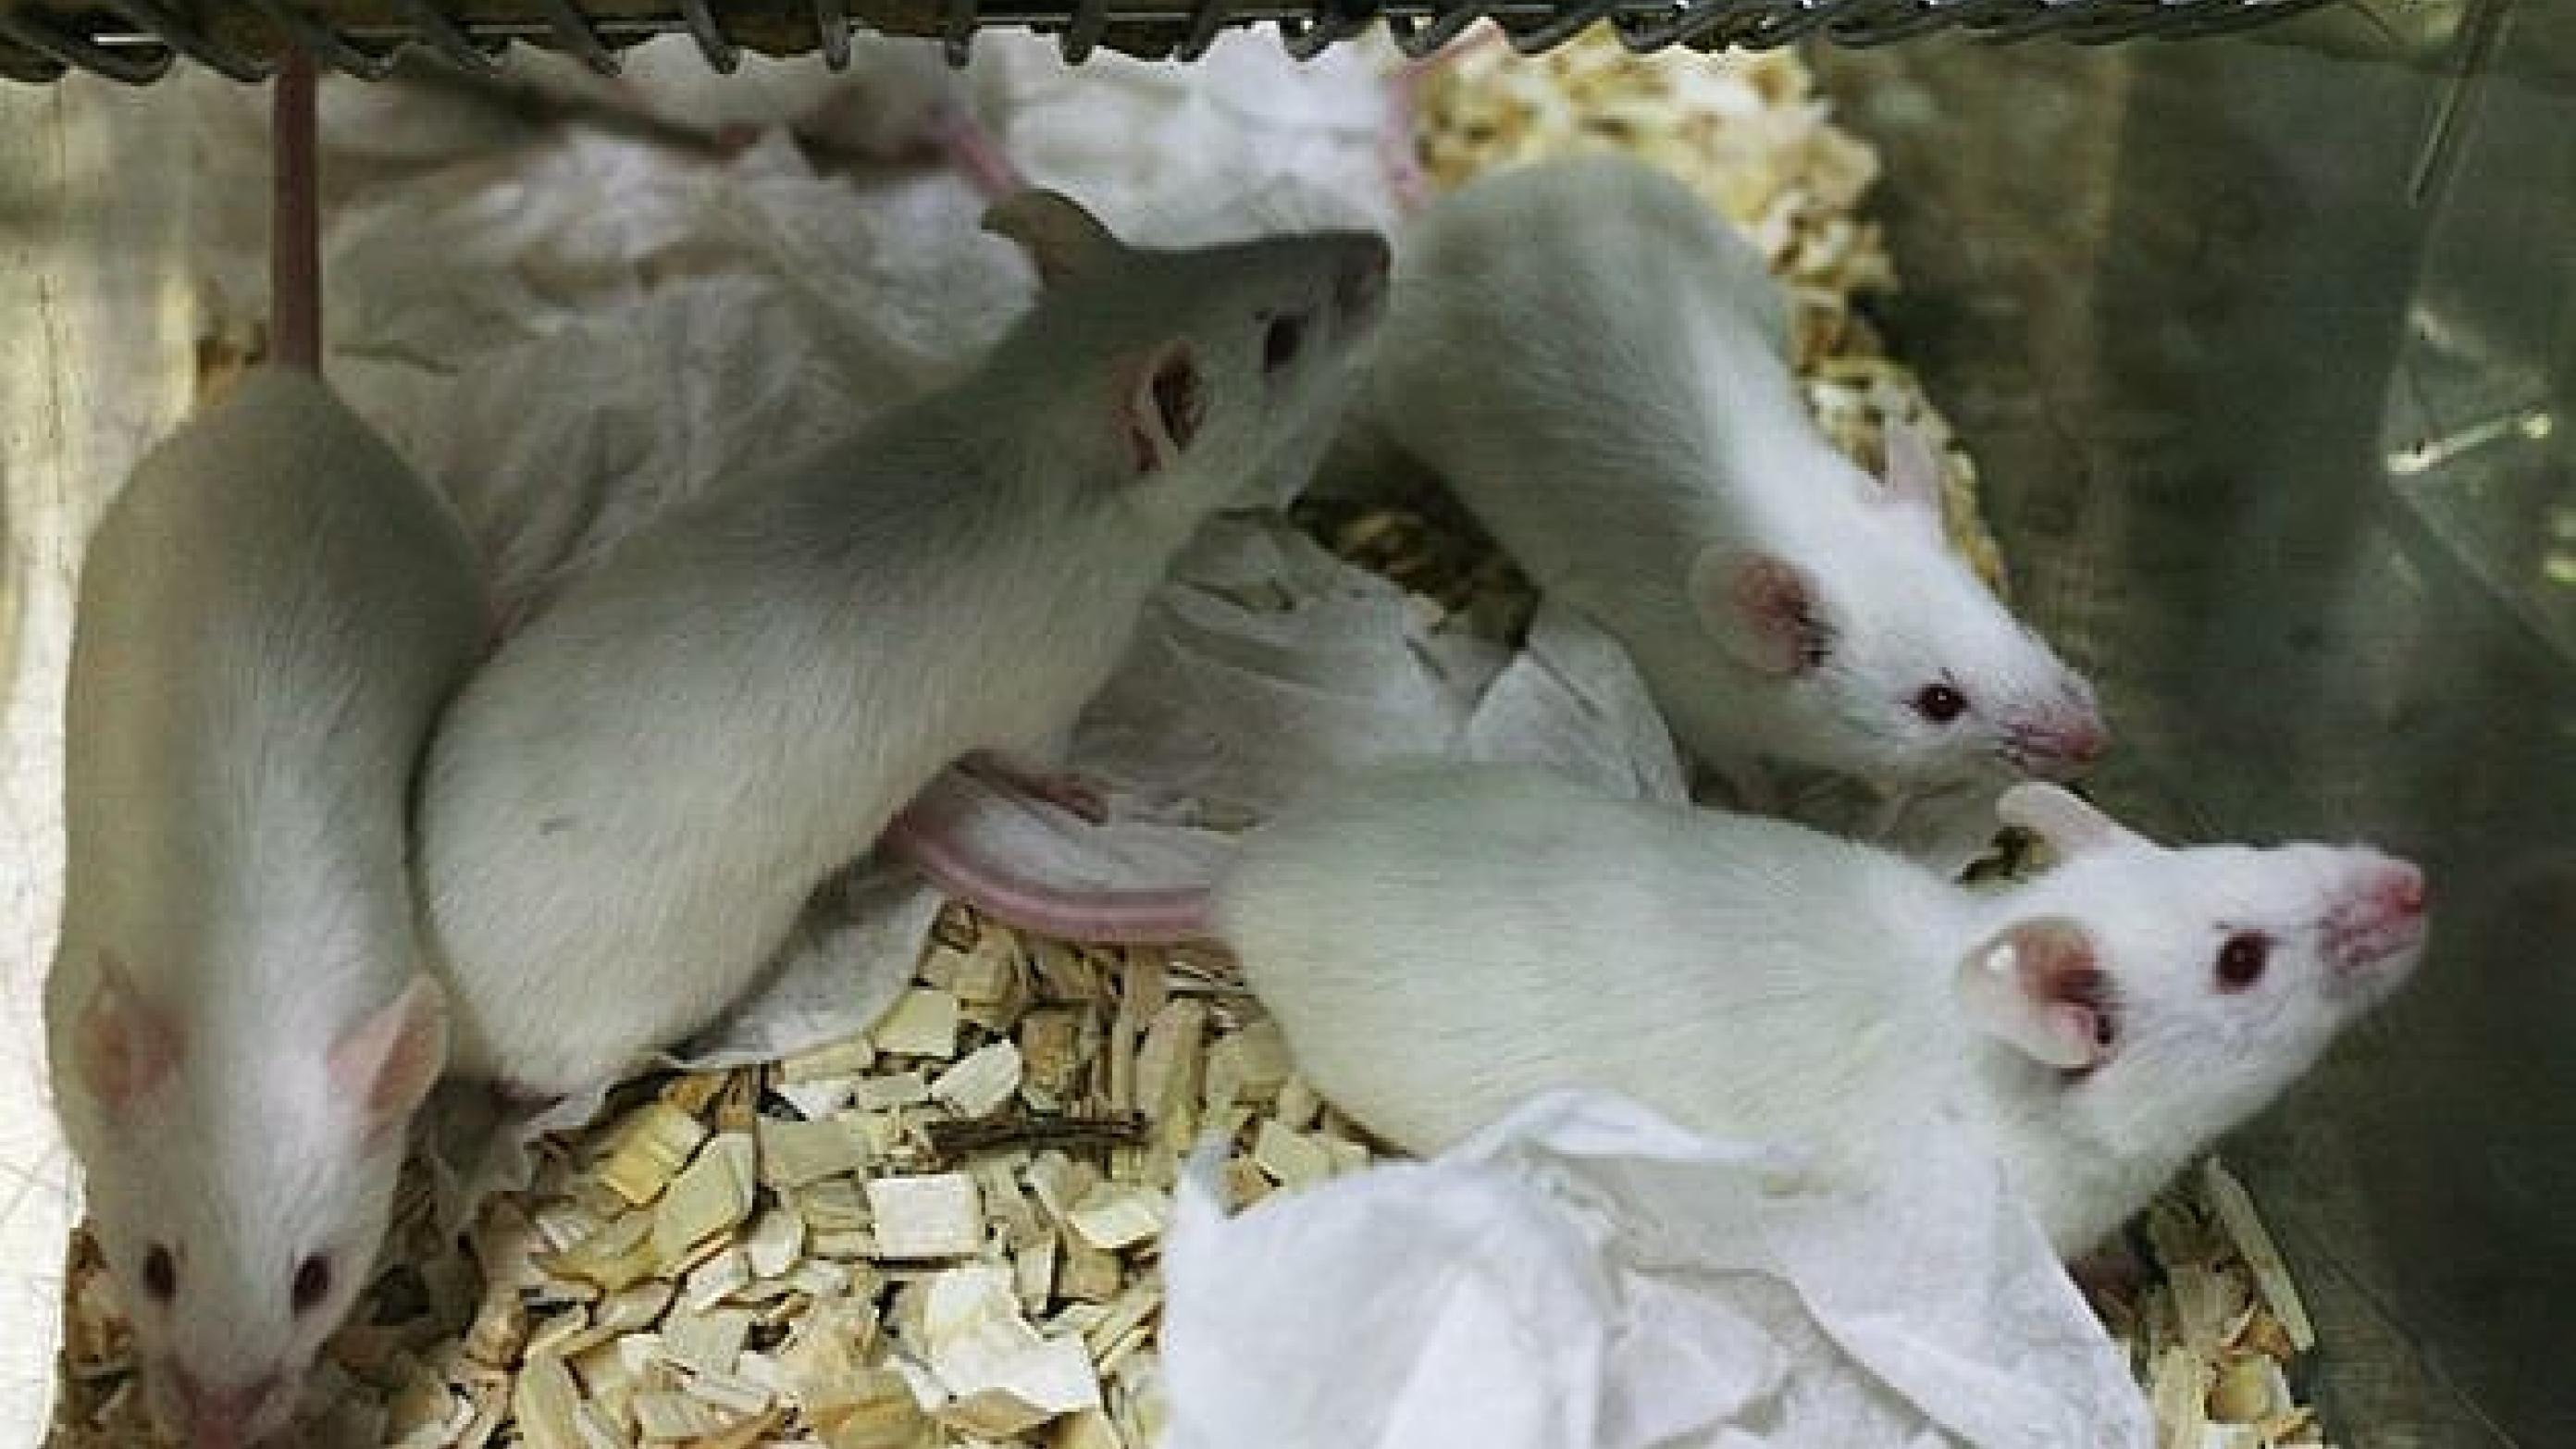 Forskerne har isoleret stamceller fra mennesker med skizofreni og overført dem til mus i en forsøgsrække, der kan pege mod en radikalt anden tilgang til behandlingen af bl.a. skizofreni. Foto: Wikimedia Commons